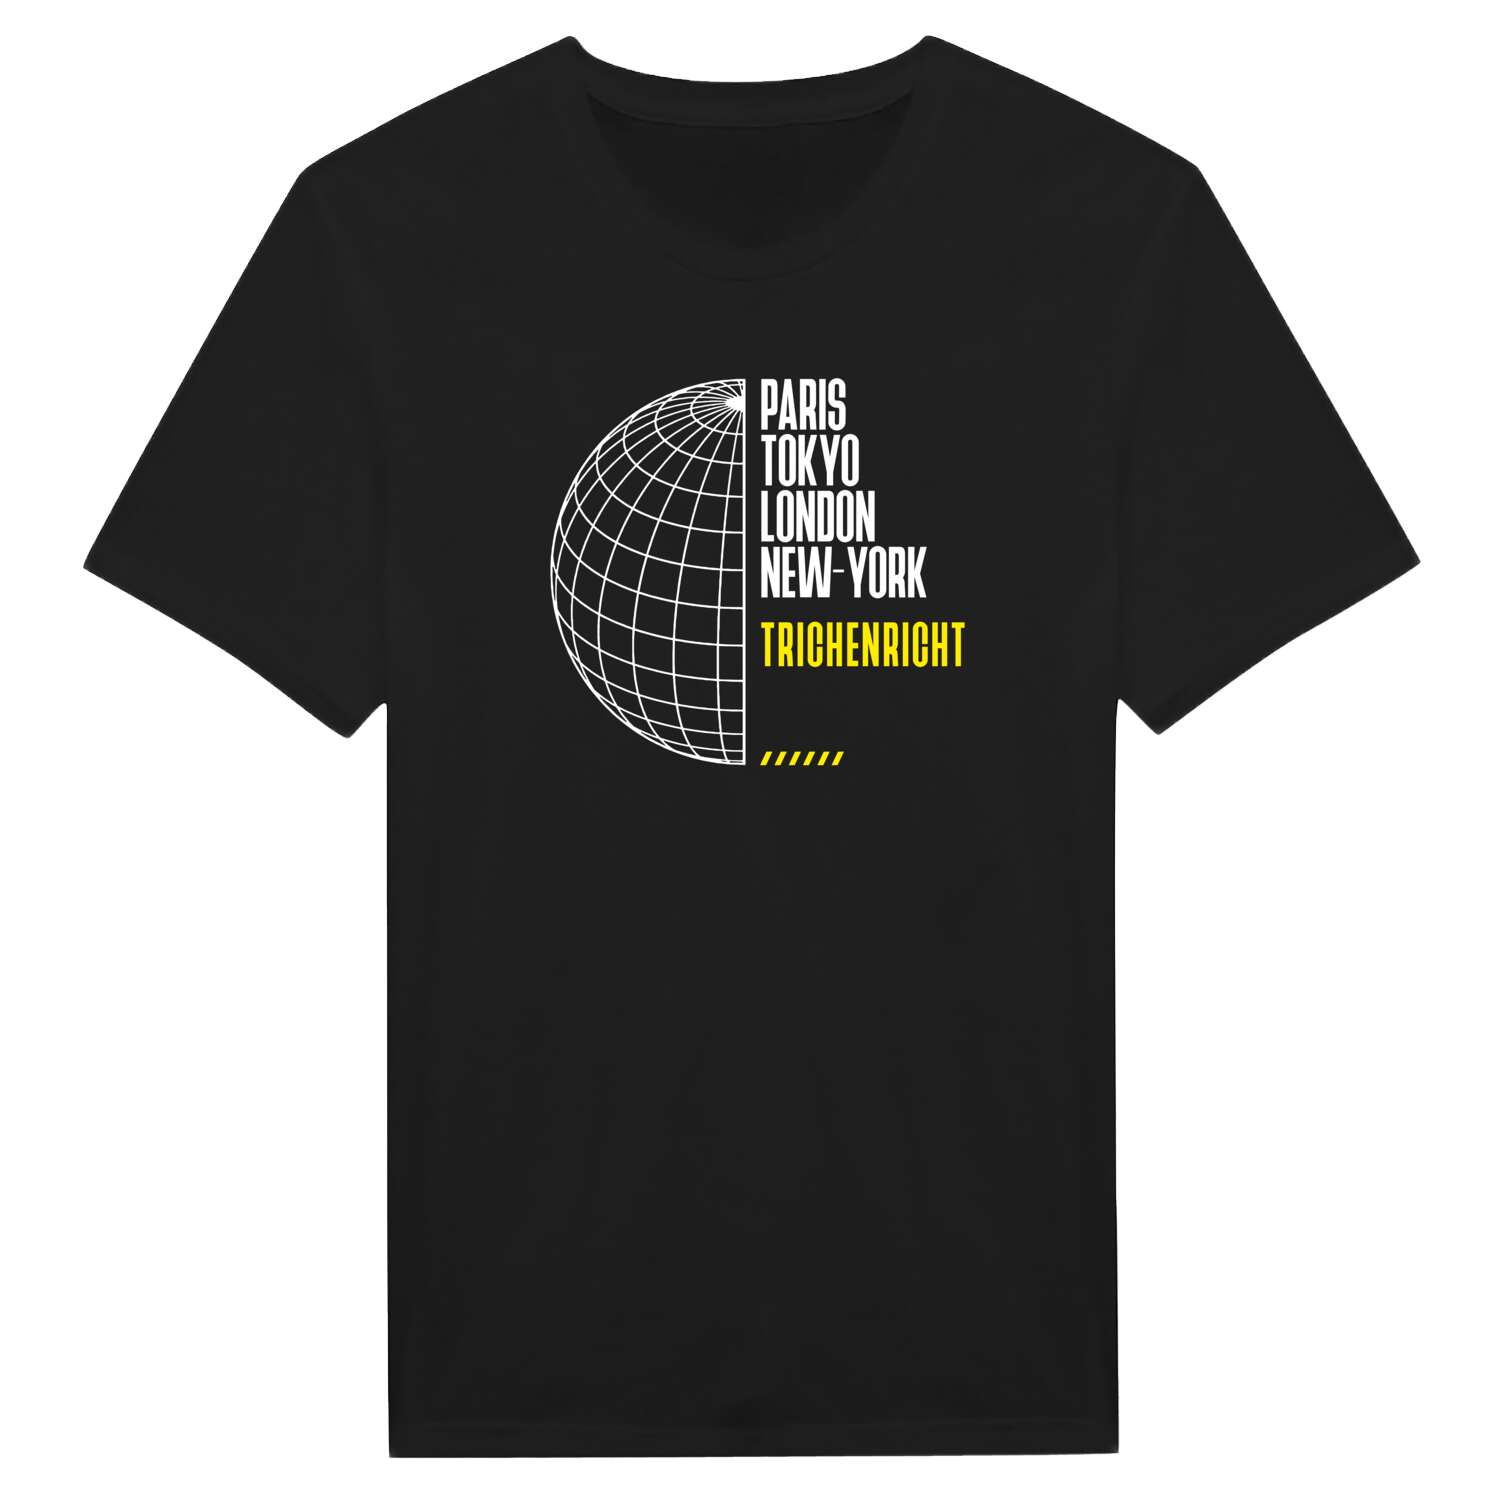 Trichenricht T-Shirt »Paris Tokyo London«